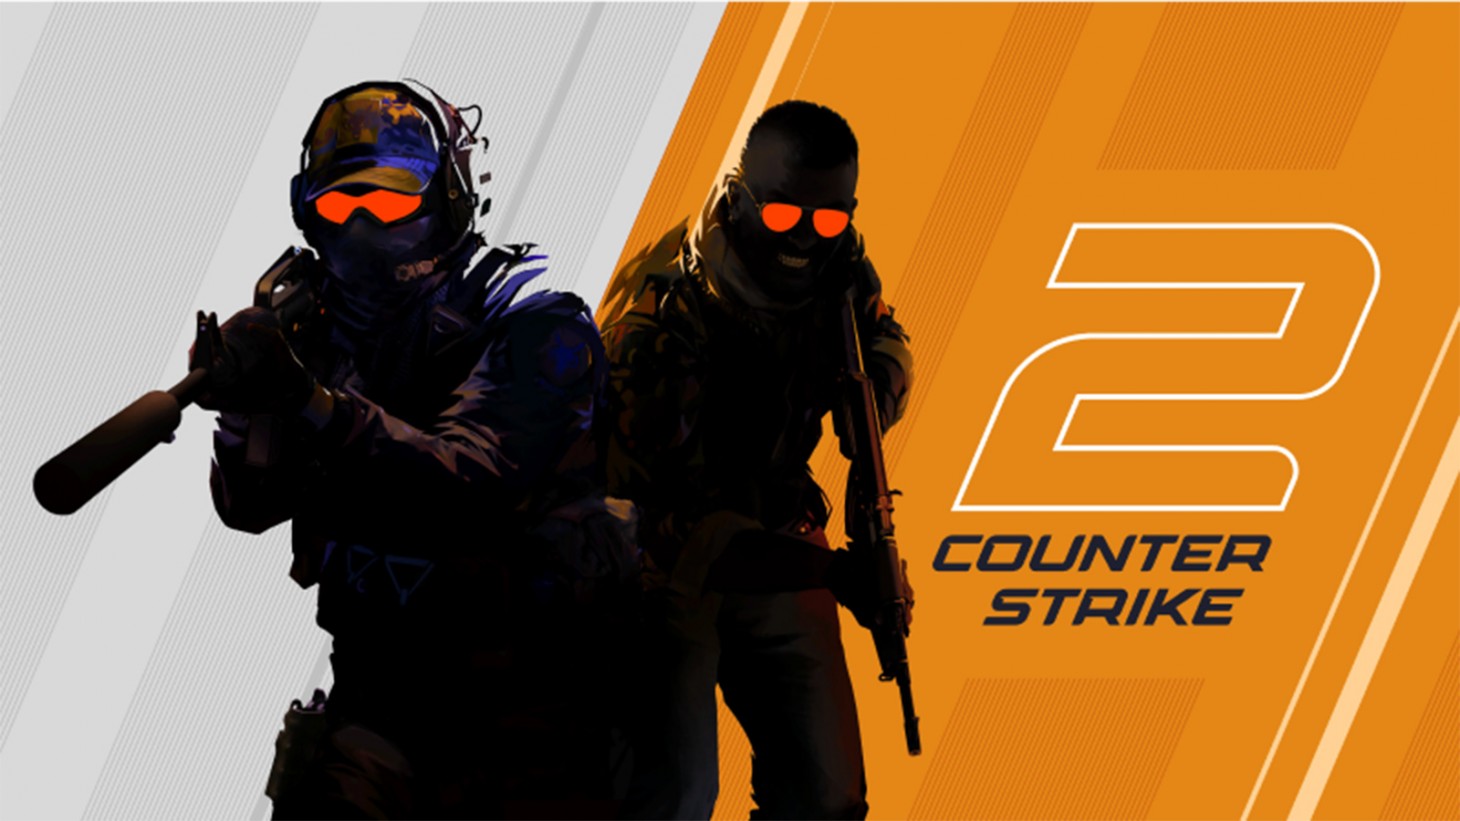 Counter-Strike 2 ist jetzt plötzlich verfügbar